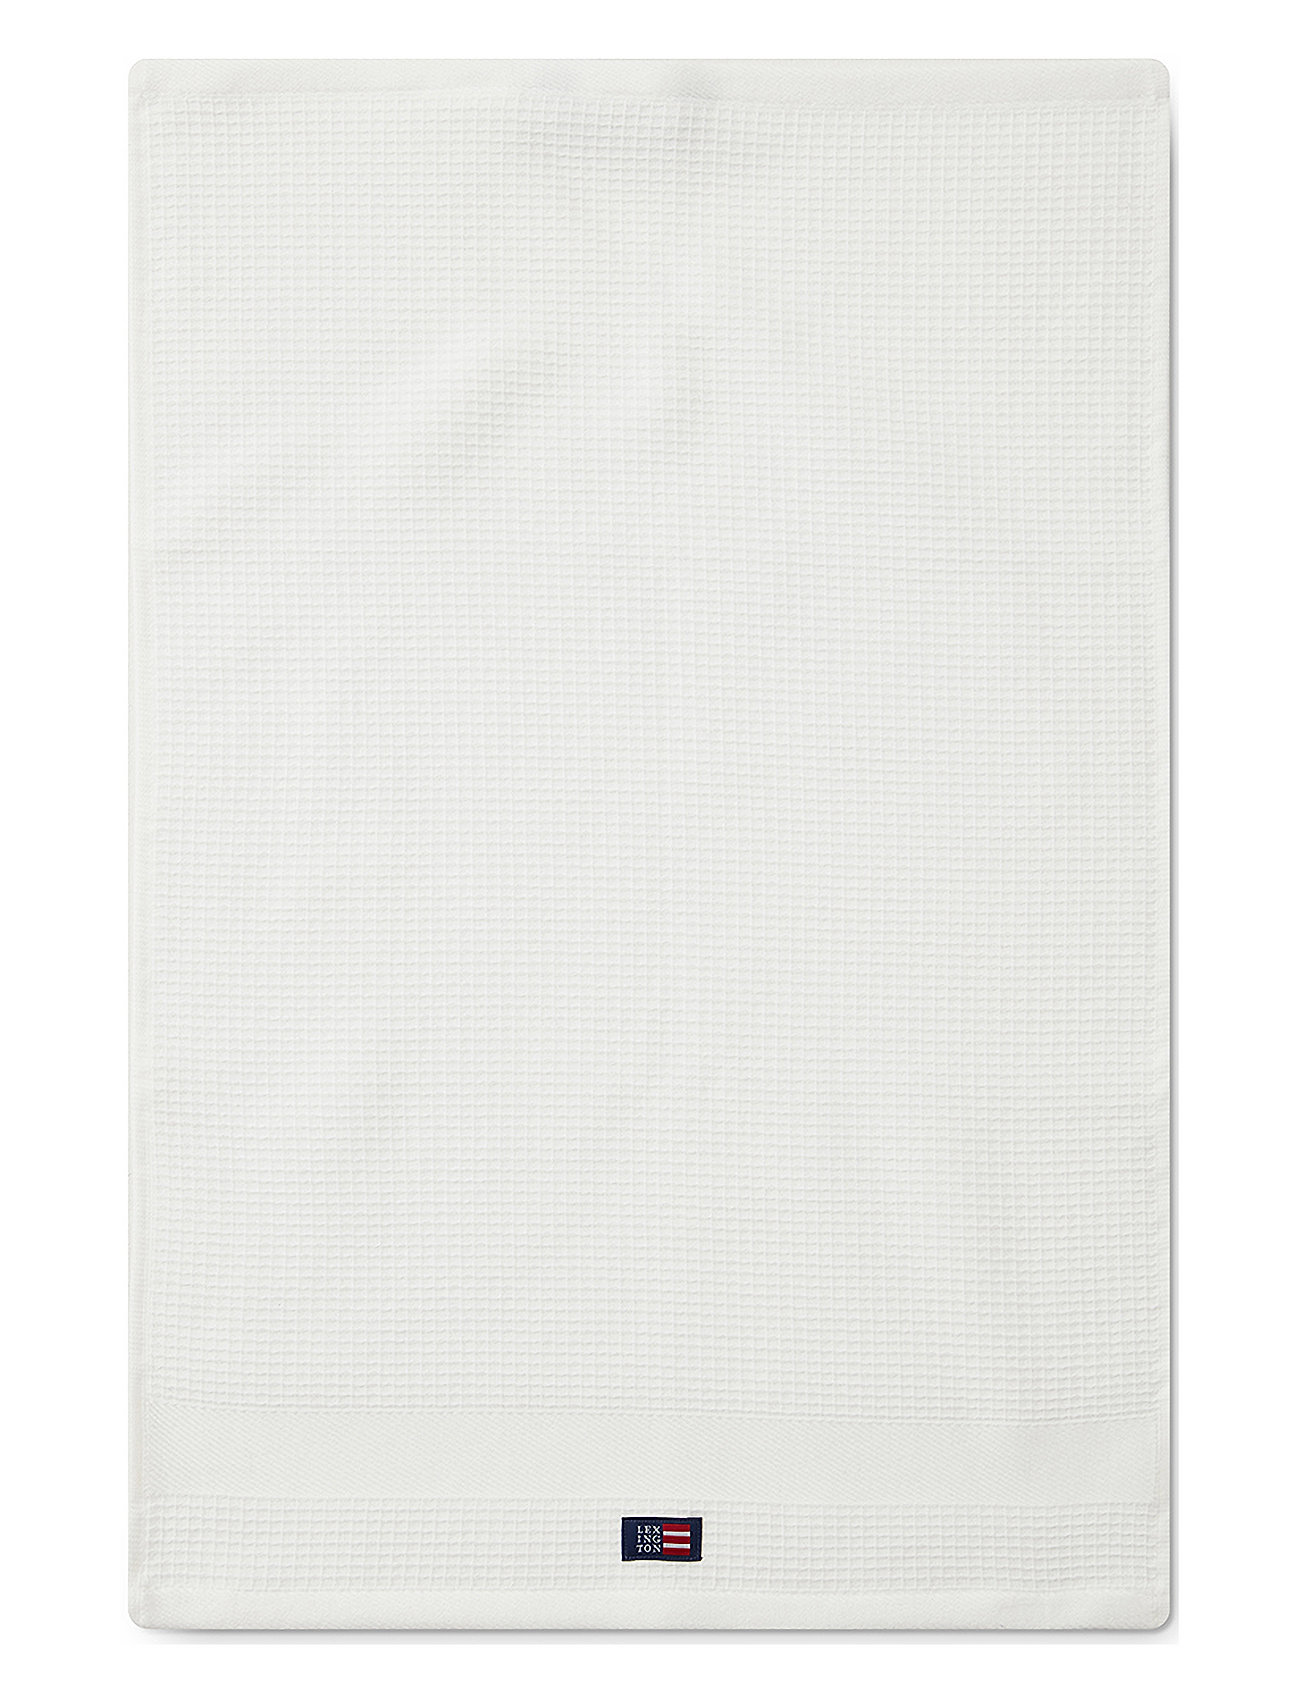 Spa Cotton Towel Home Textiles Bathroom Textiles Towels & Bath Towels Hand Towels White Lexington Home